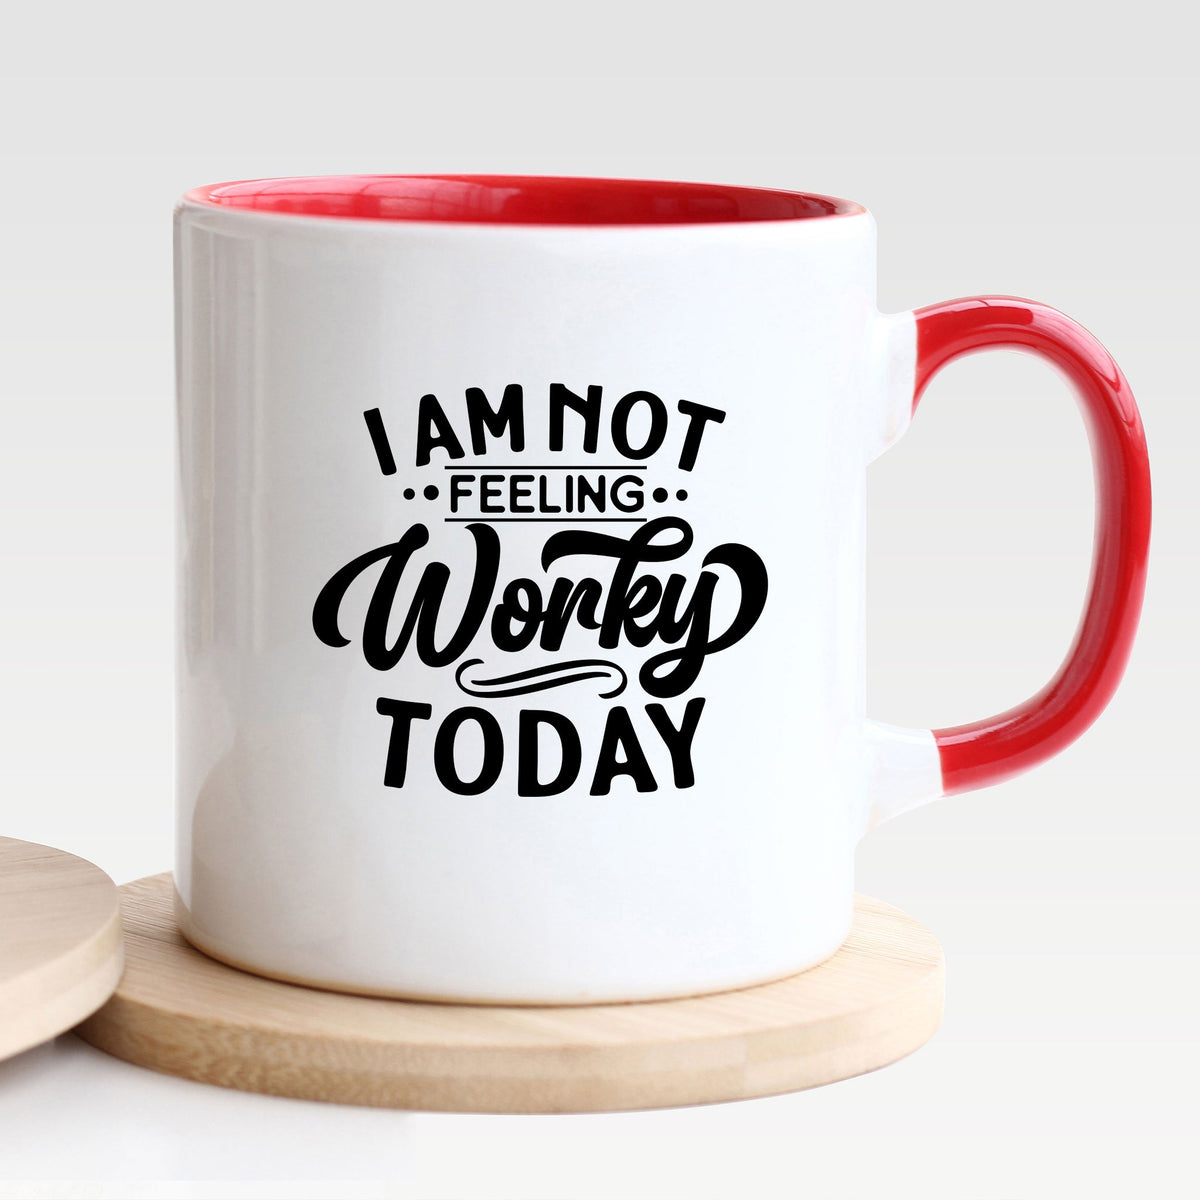 I Am Not Feeling Worky Today - Mug